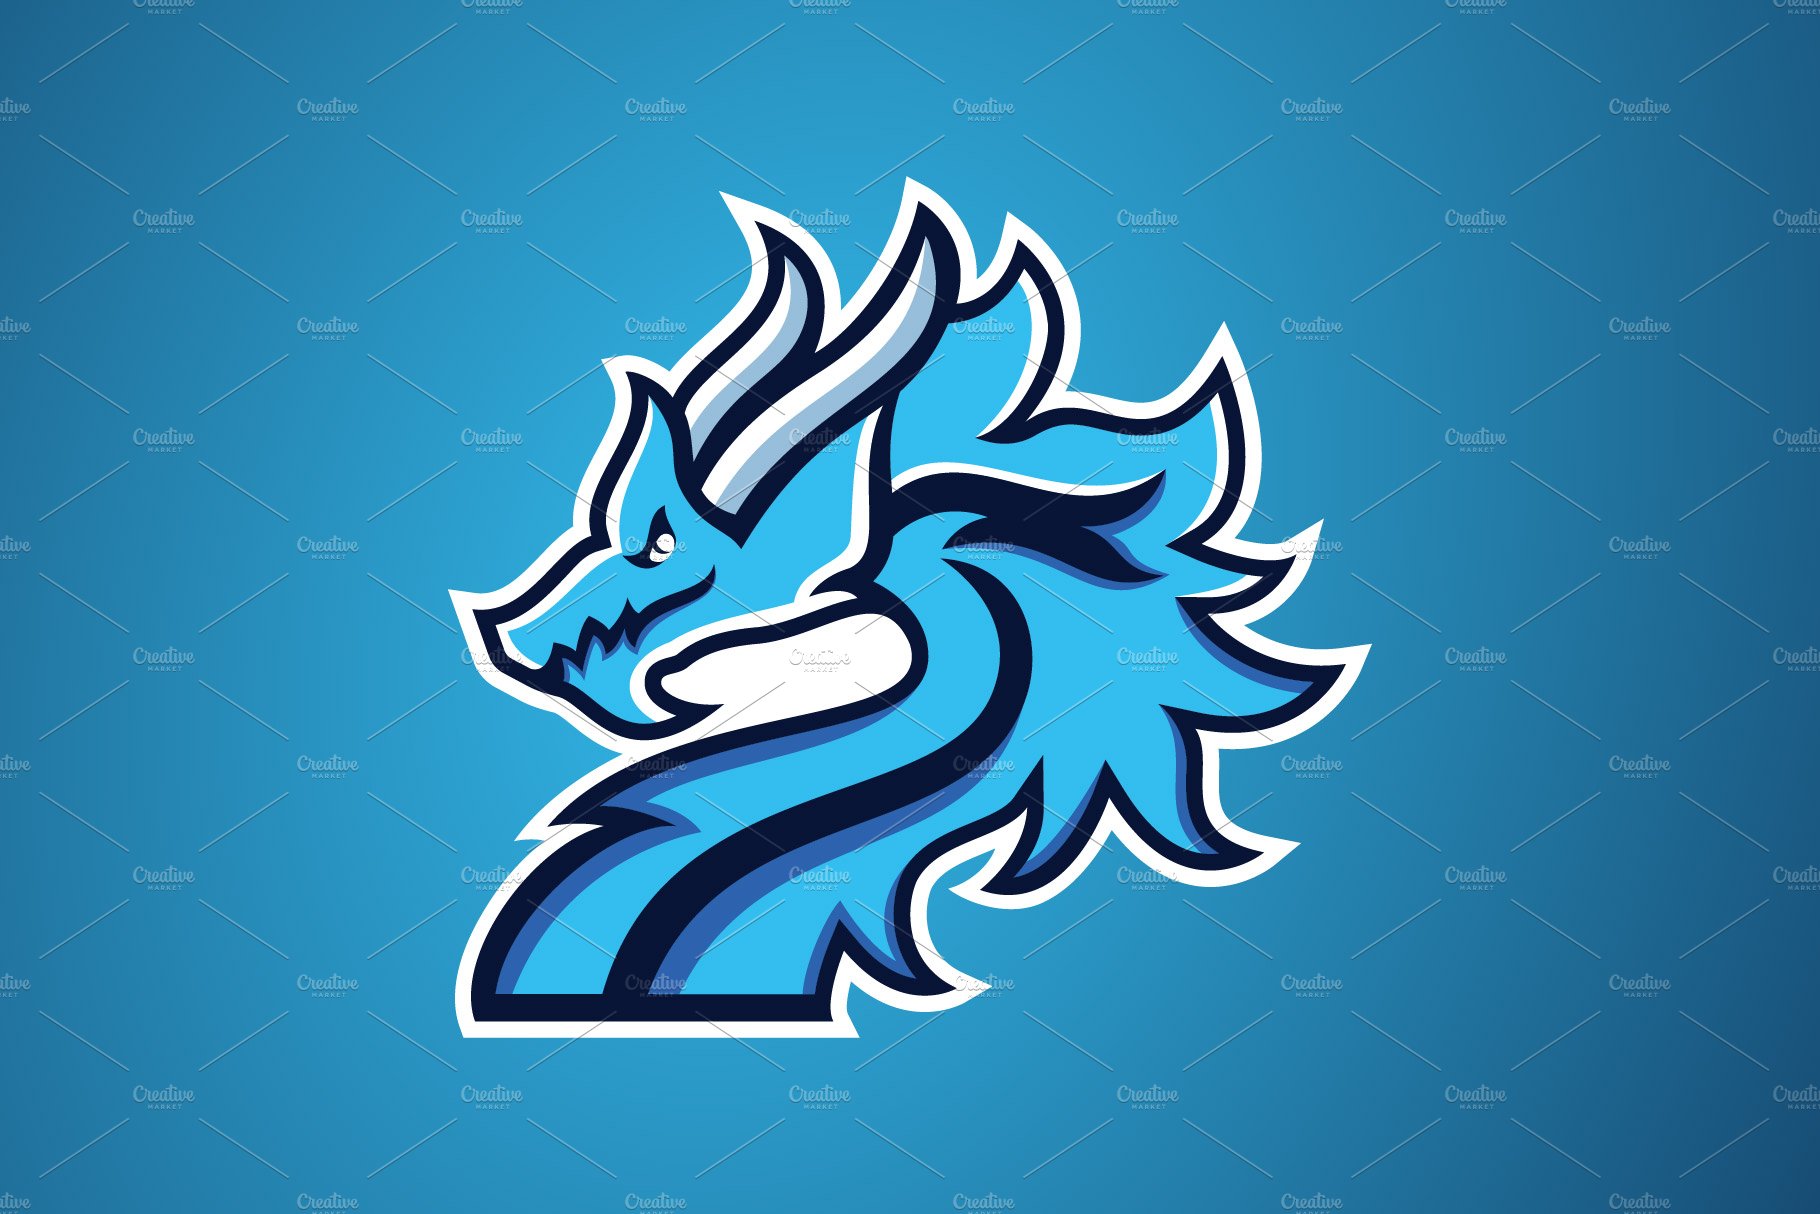 preview dragon logo 04 835